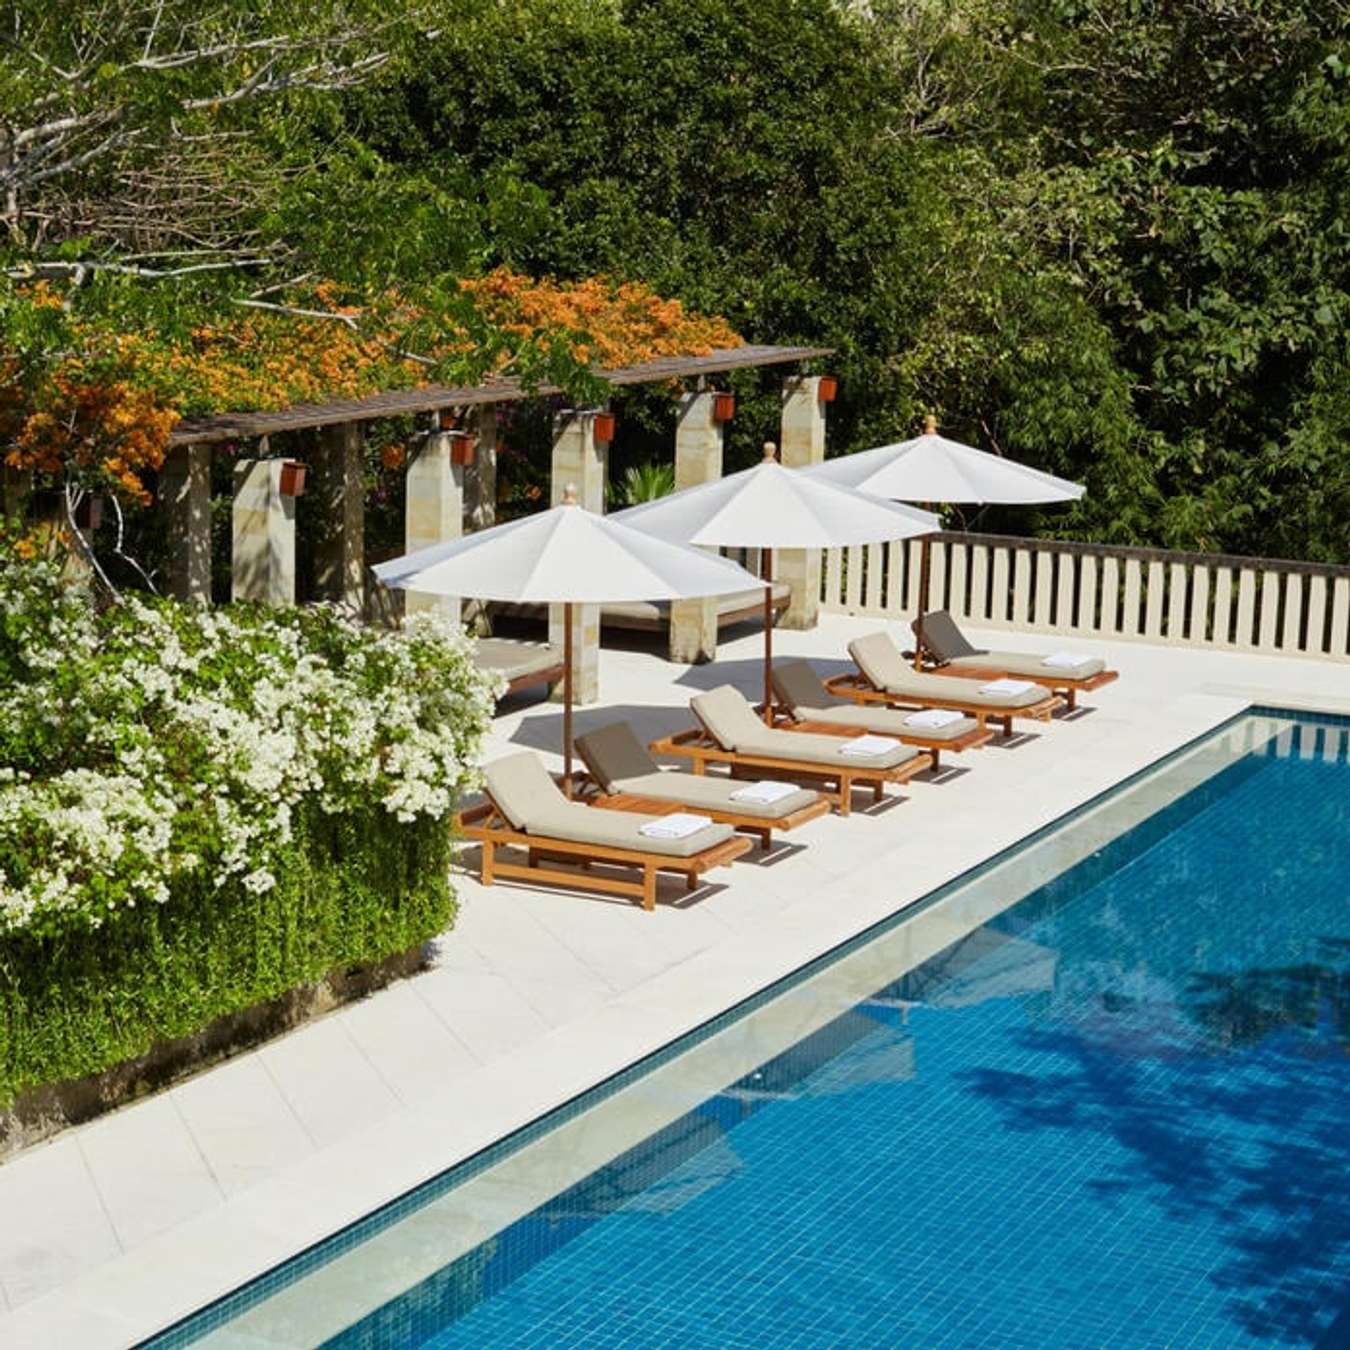 Best Hotels in Bali for Honeymoon